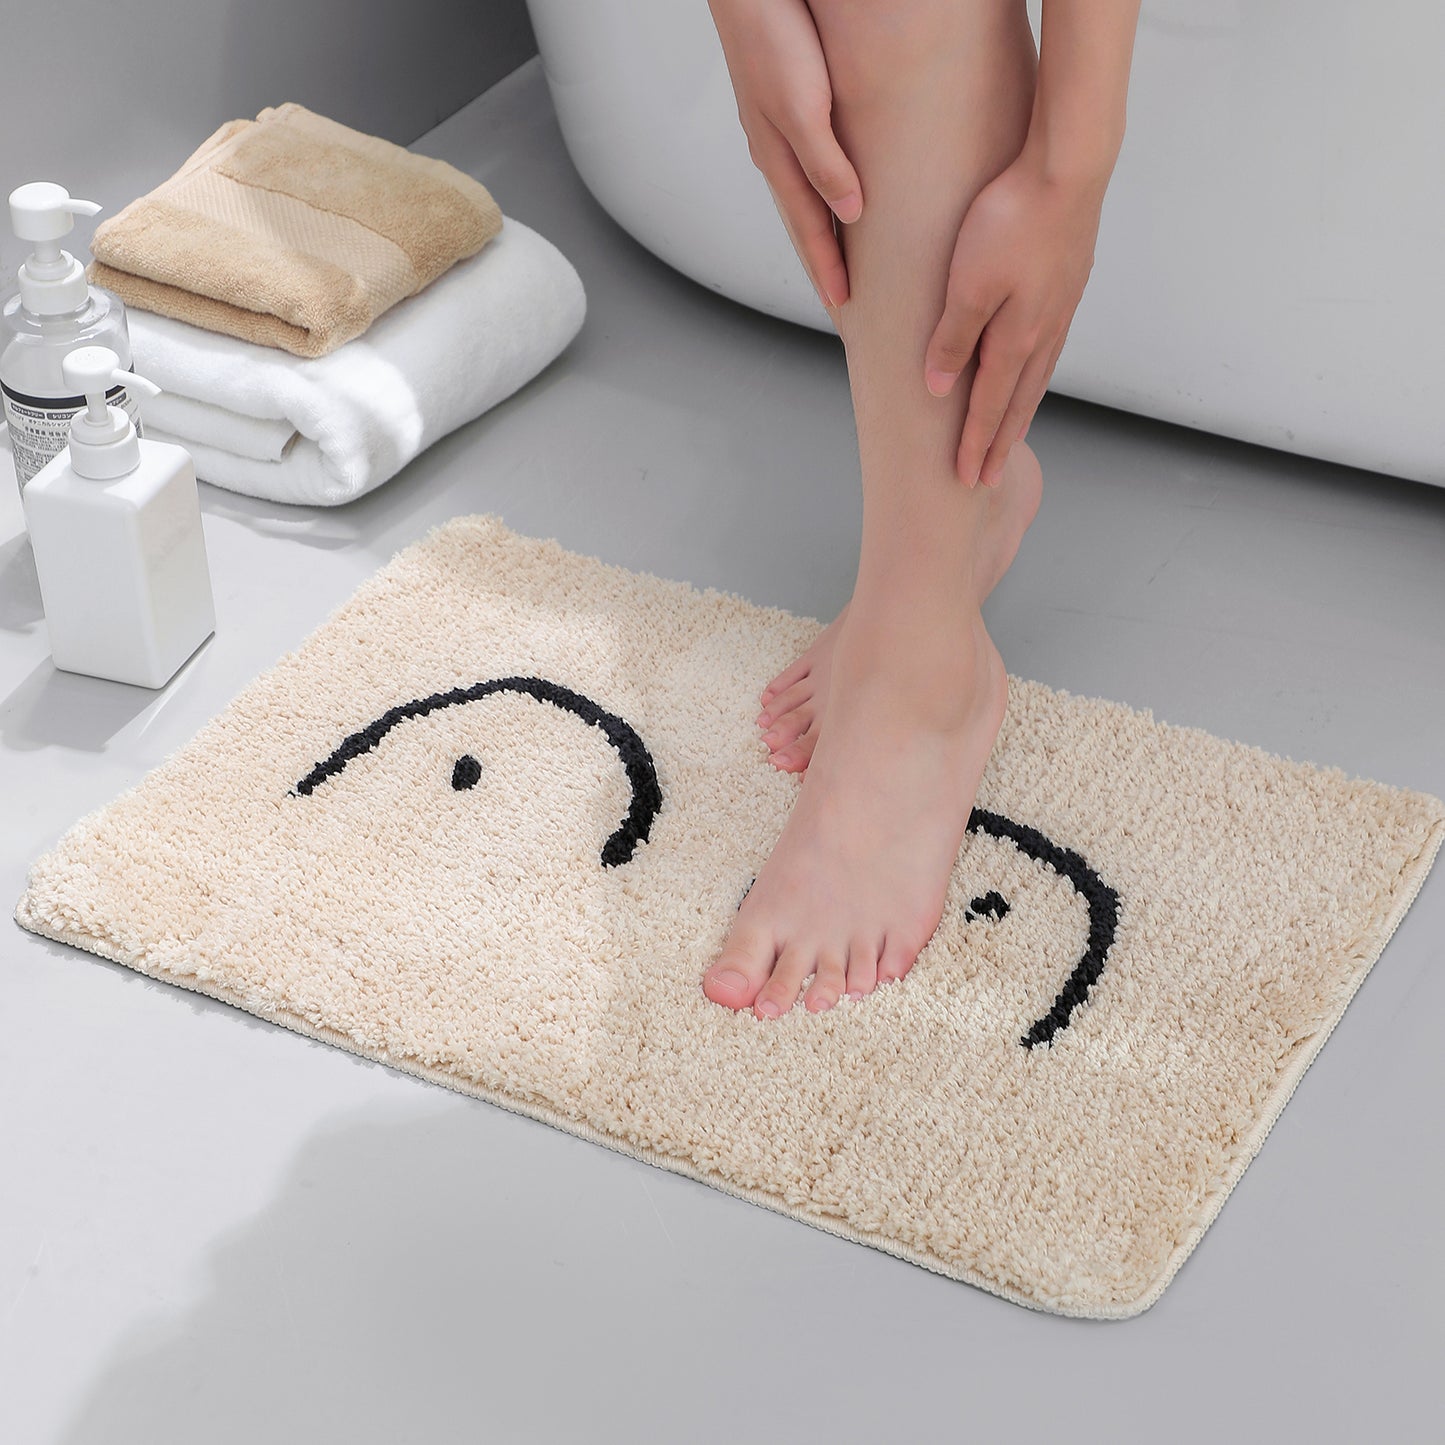 Feblilac Cute Naked Boobs Bath Mat - Feblilac® Mat